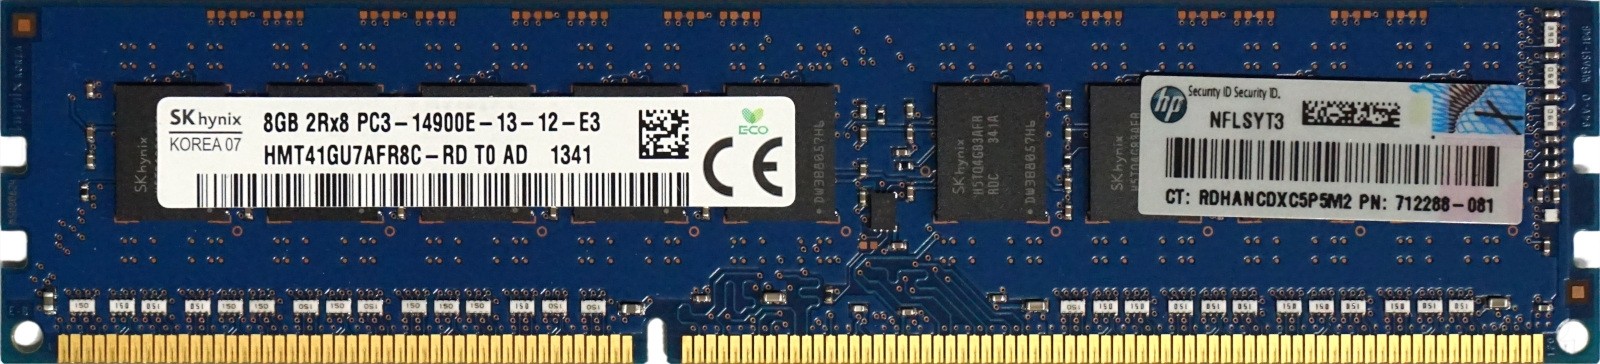 712288-081 HP (712288-081) - 8GB PC3-14900E (DDR3-1866Mhz, 2RX8)